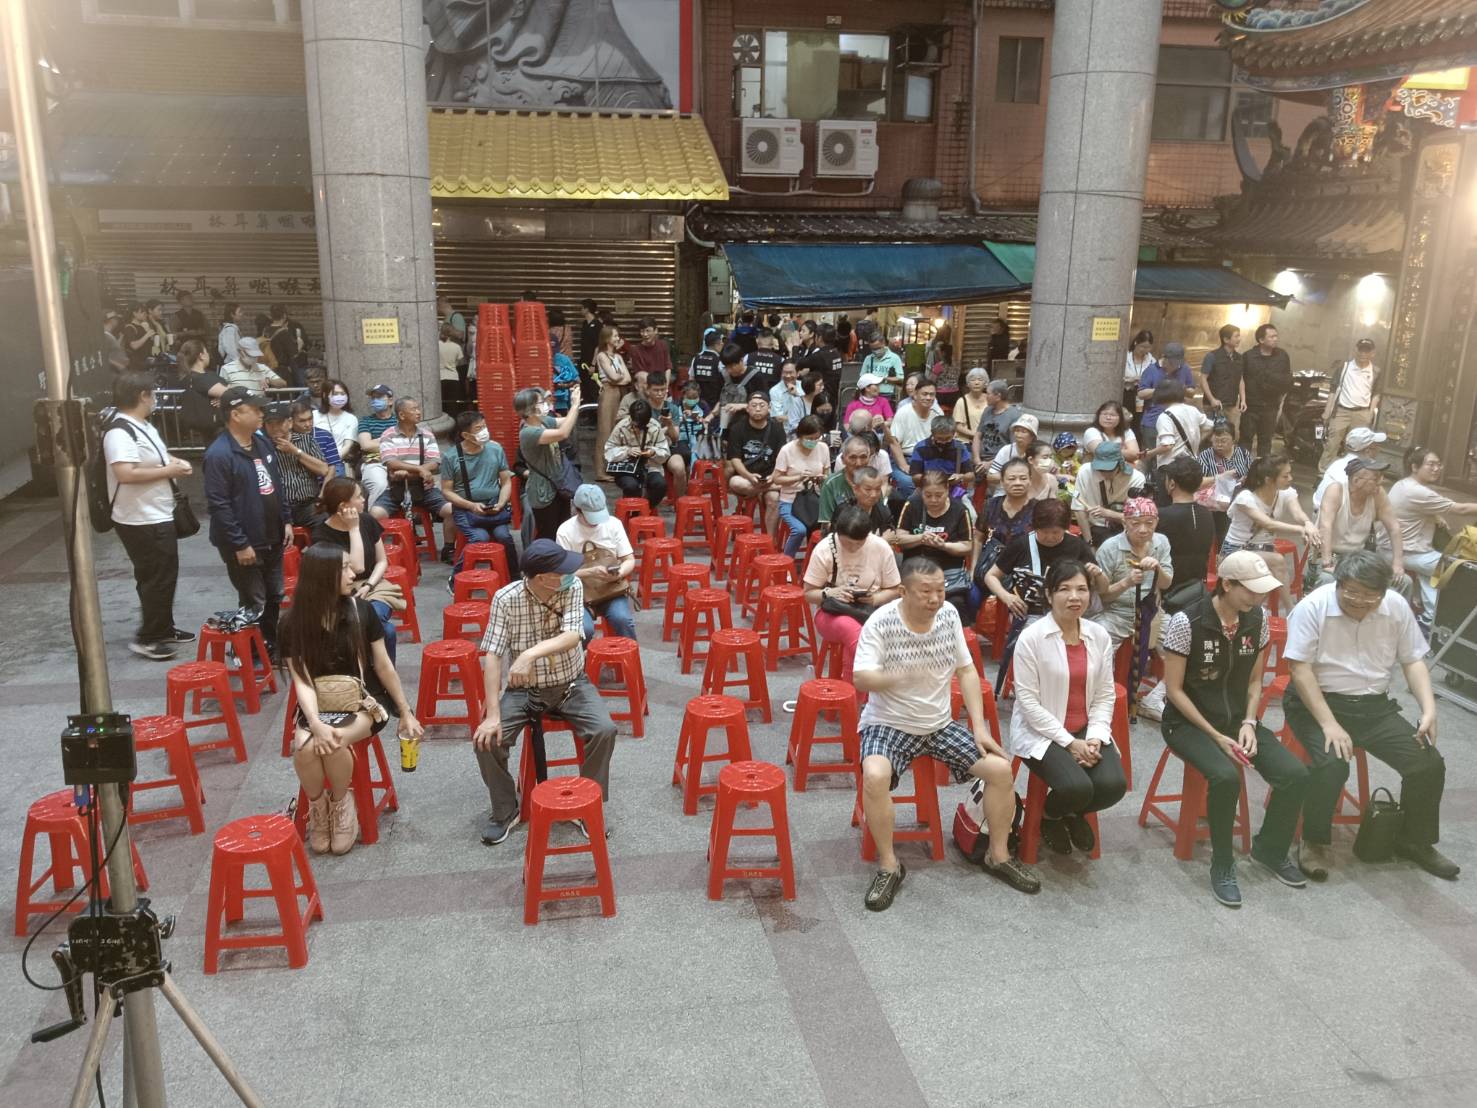 社团法人台湾经济民主连合等团体，今晚6点30分在基隆市庆安宫广场举办「反国会滥权，与林沛祥对话」活动，晚间6时10分左右现场聚集数十人等待开场。记者邱瑞杰／摄影